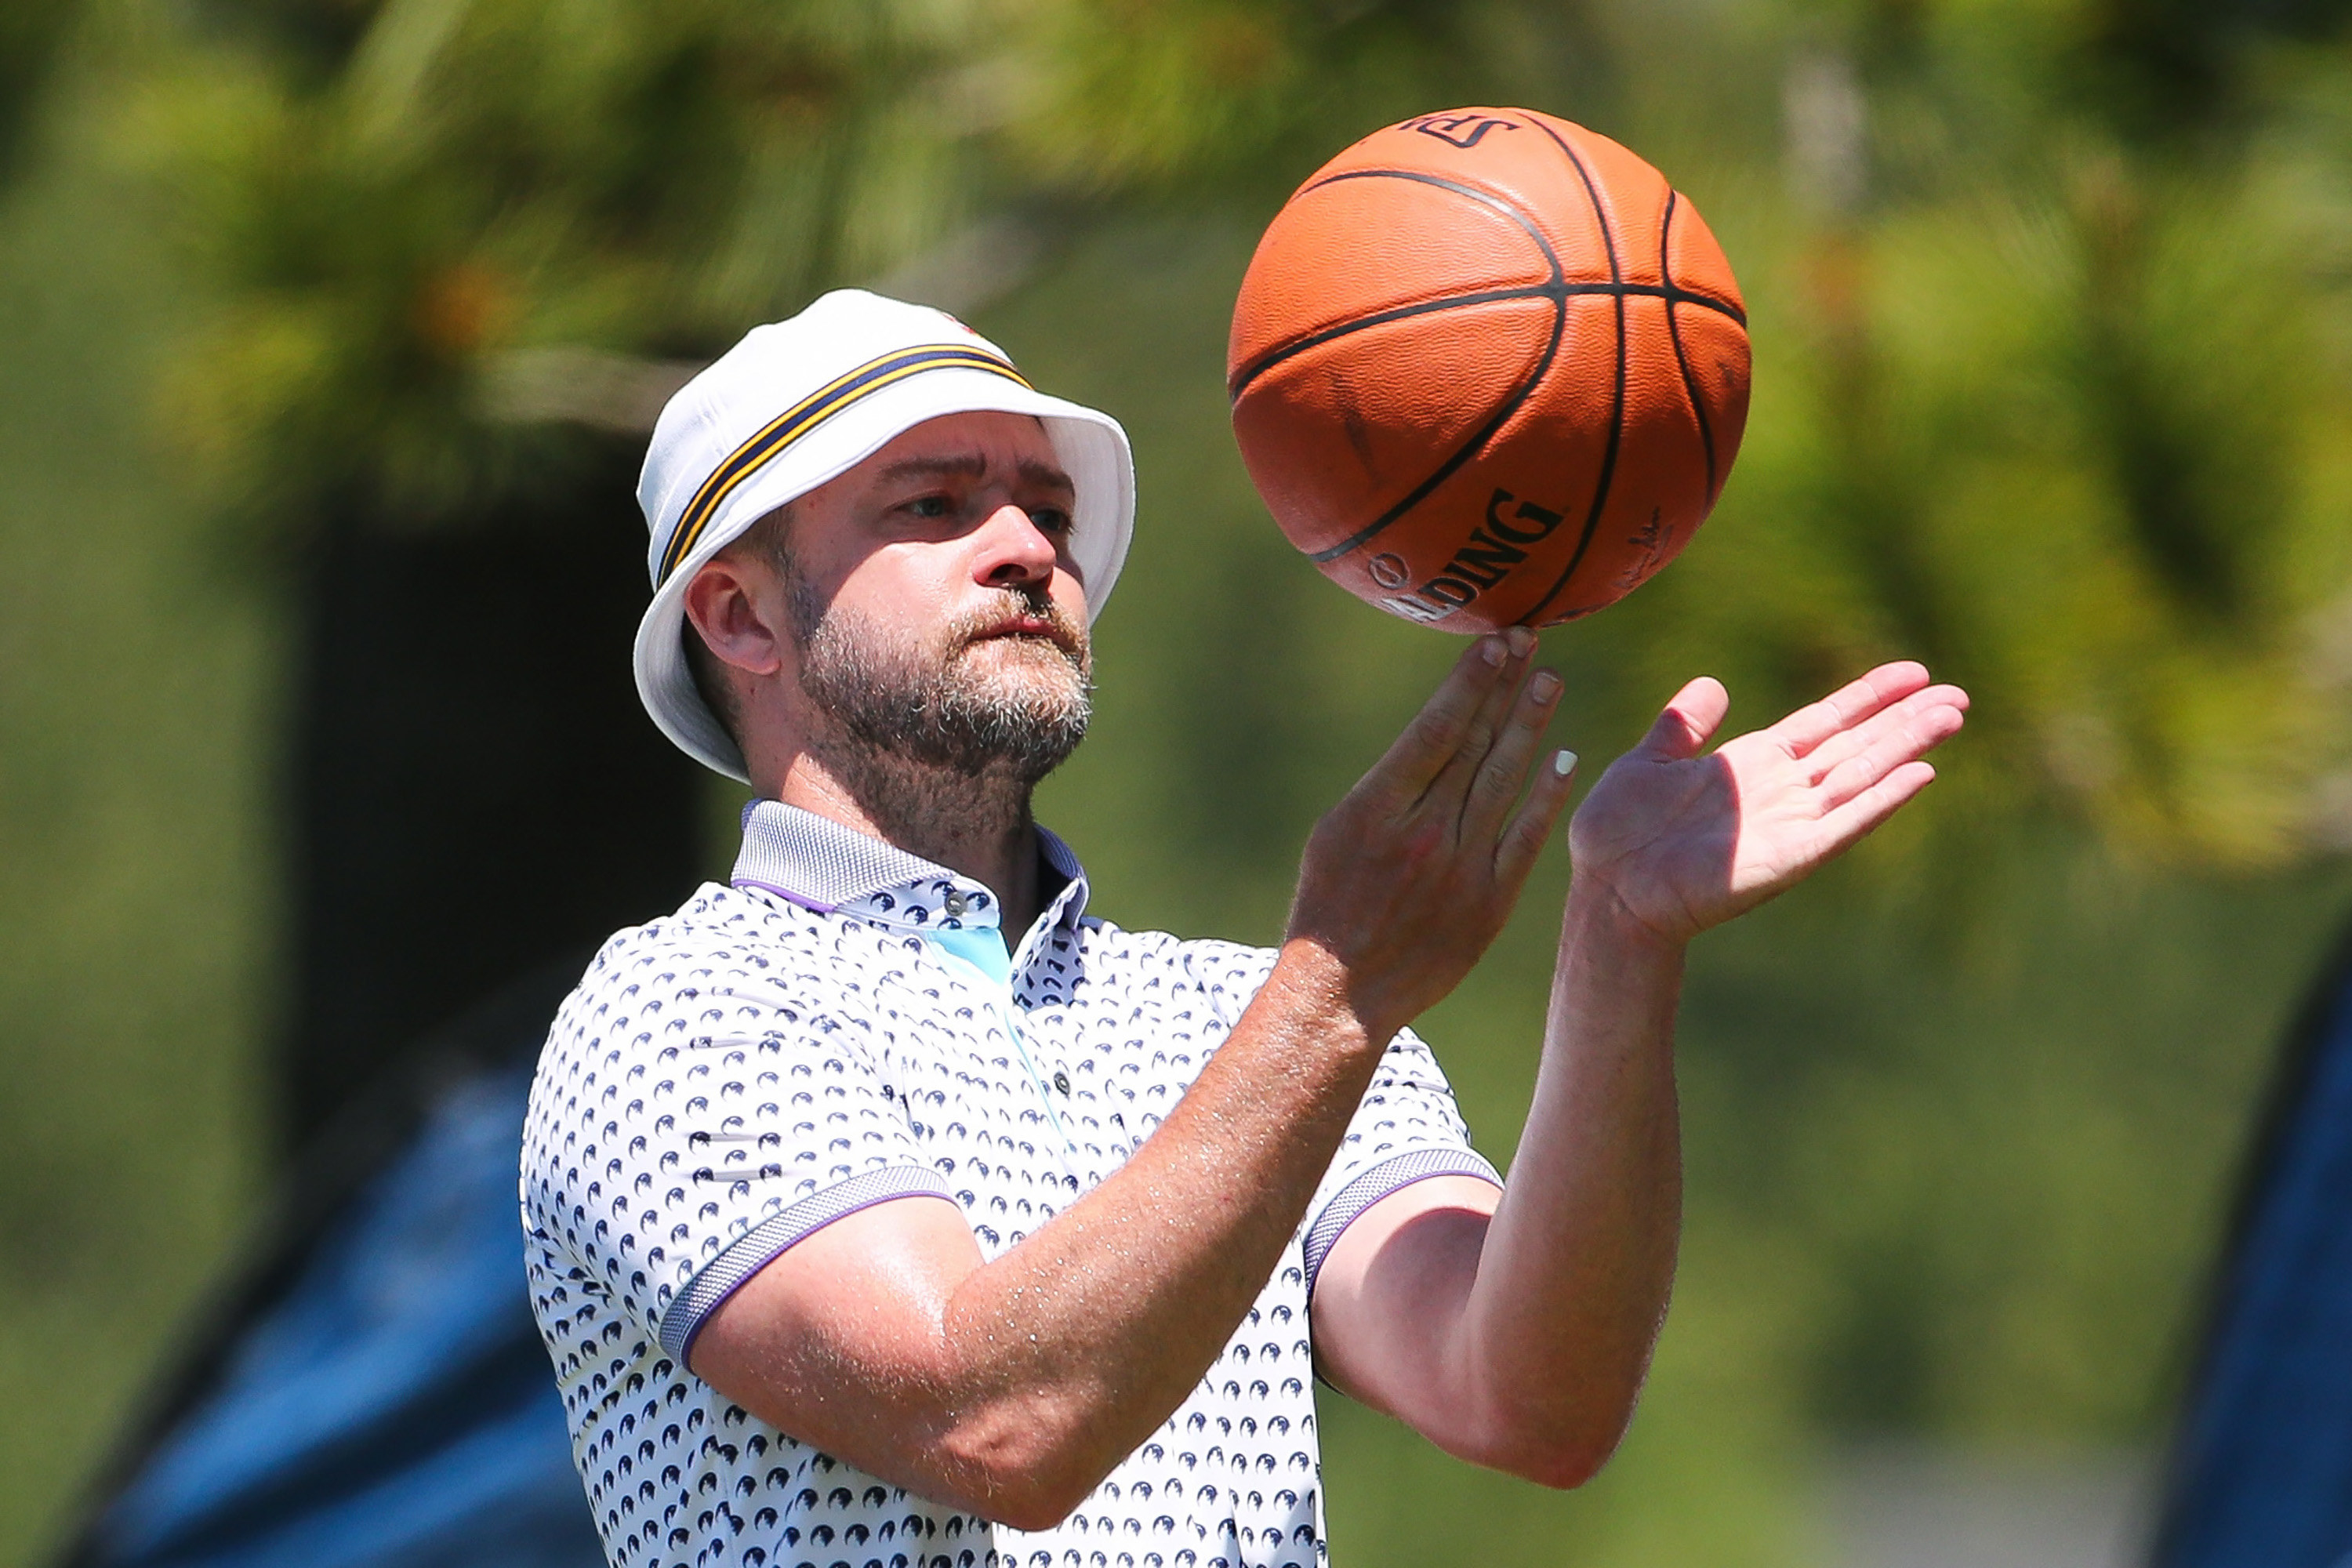 Timberlake playing with a basketball